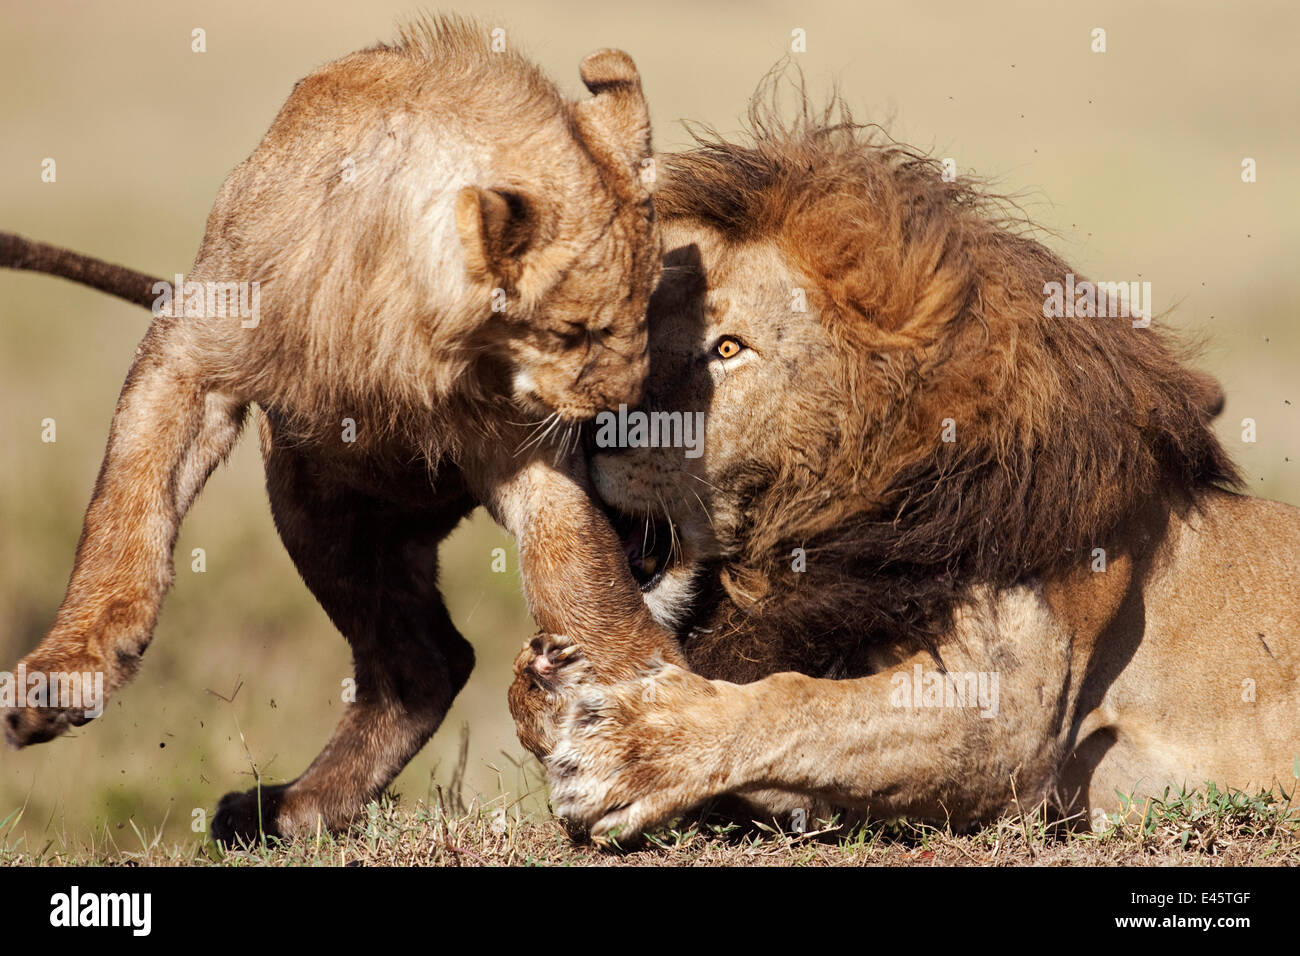 L'African lion (Panthera leo) mâle adulte se défendre contre l'adolescent qui a perturbé son sommeil, Masai Mara National Reserve, Kenya. Mars. Banque D'Images